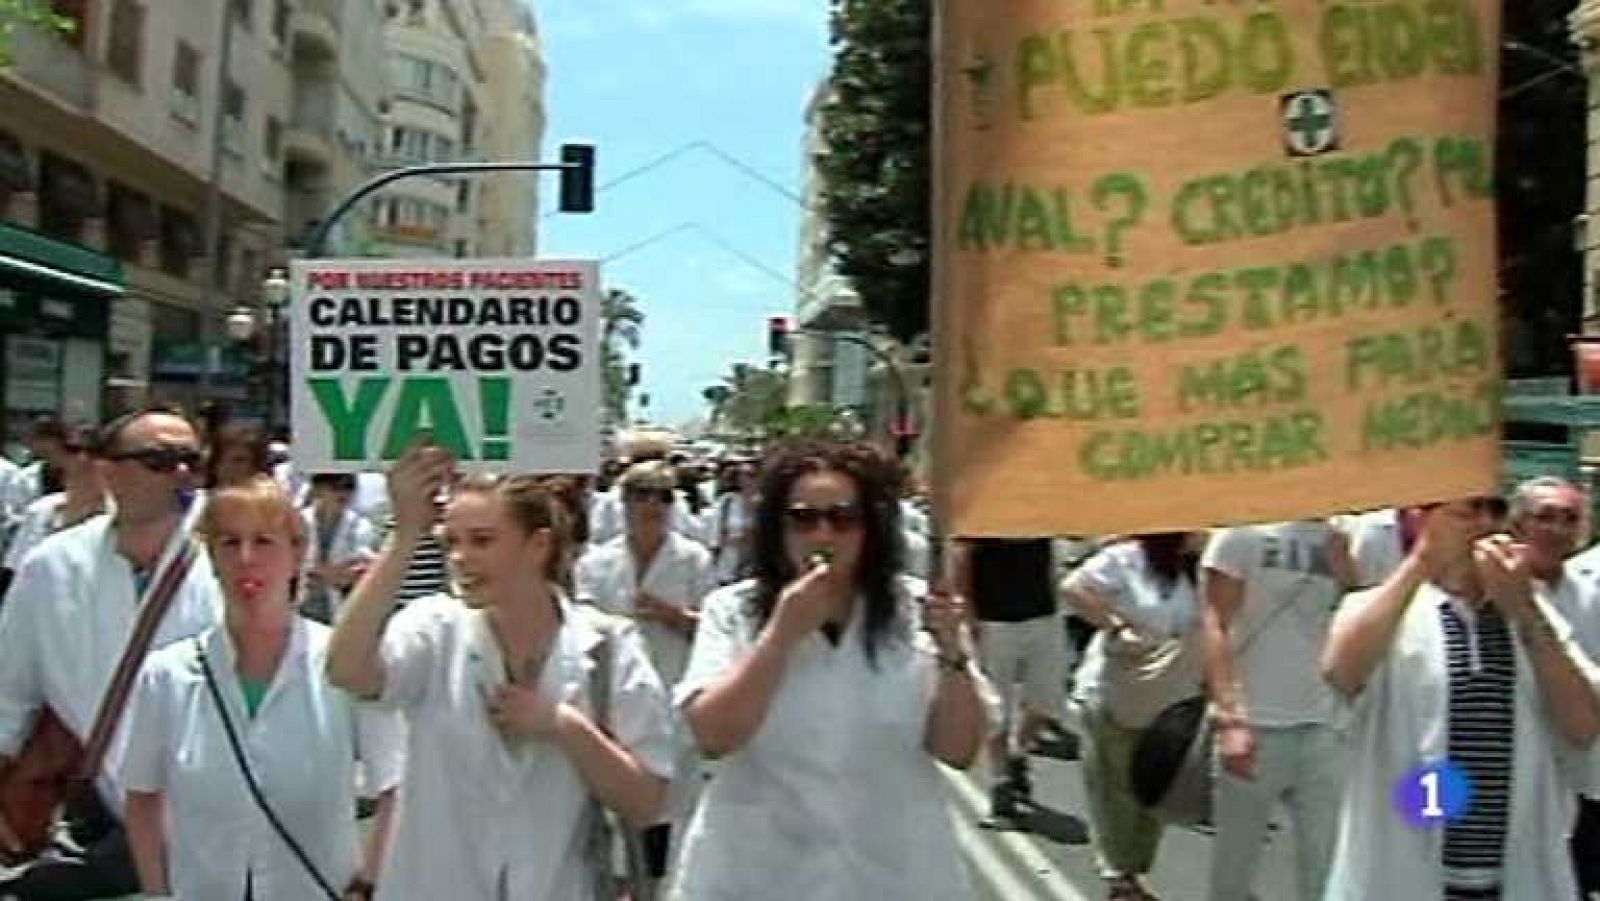 L'informatiu - Comunitat Valenciana: L'Informatiu - Comunitat Valenciana -  08/06/12 | RTVE Play